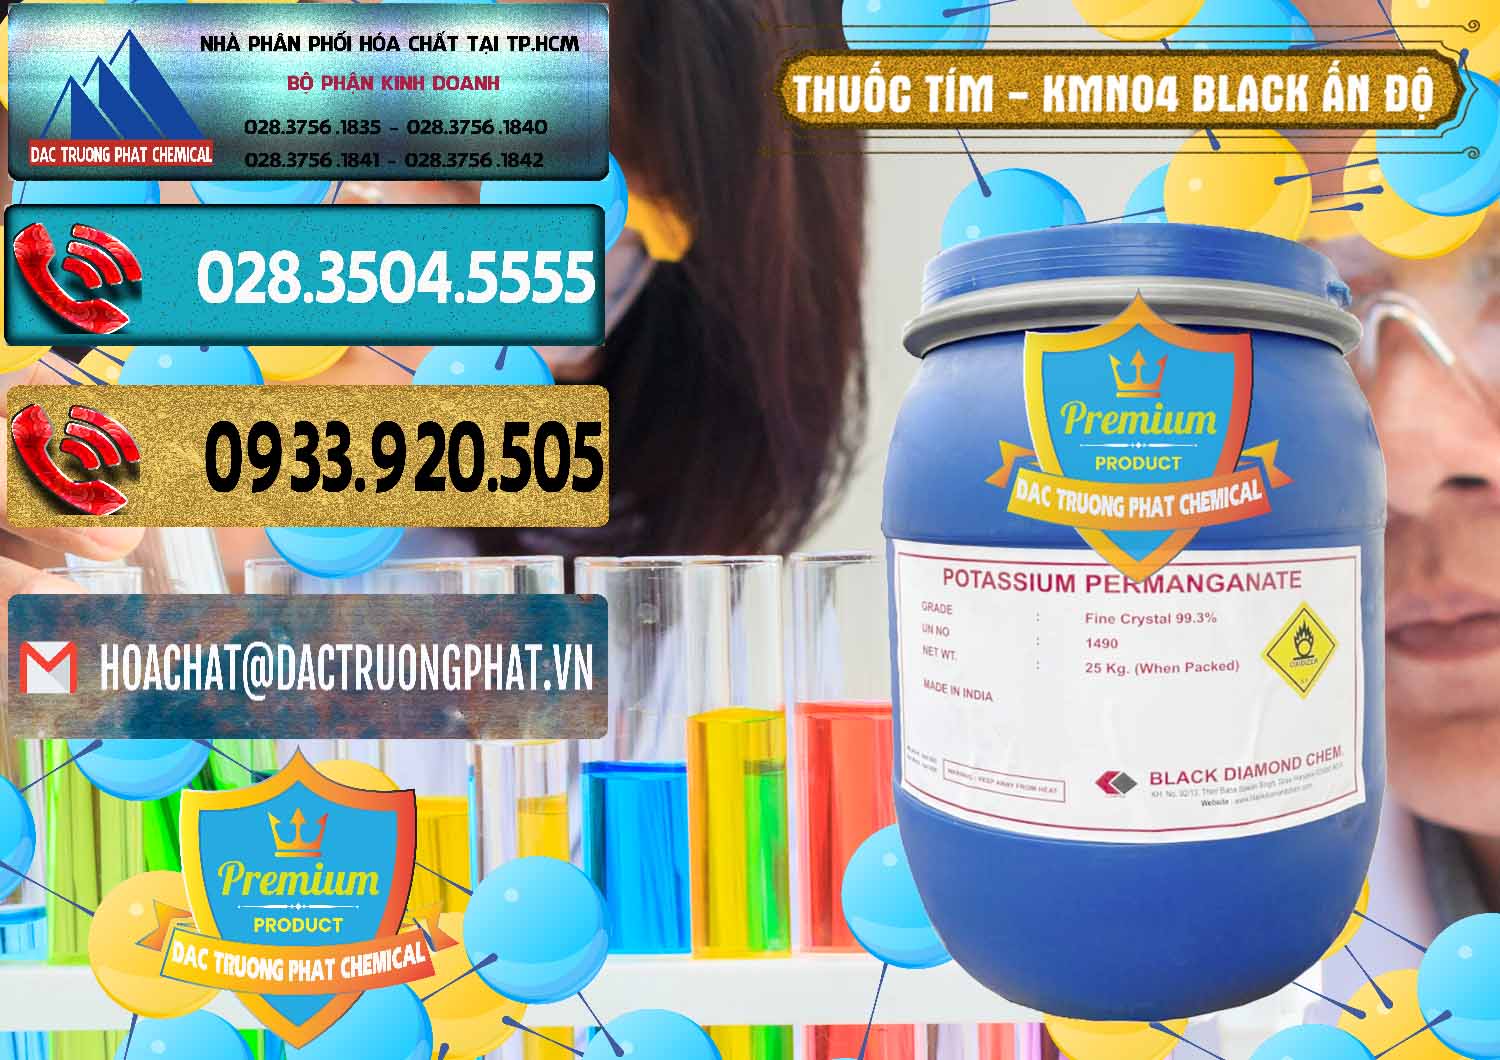 Cty bán _ cung ứng Thuốc Tím - KMNO4 Black Diamond Ấn Độ India - 0414 - Chuyên kinh doanh và cung cấp hóa chất tại TP.HCM - hoachatdetnhuom.com